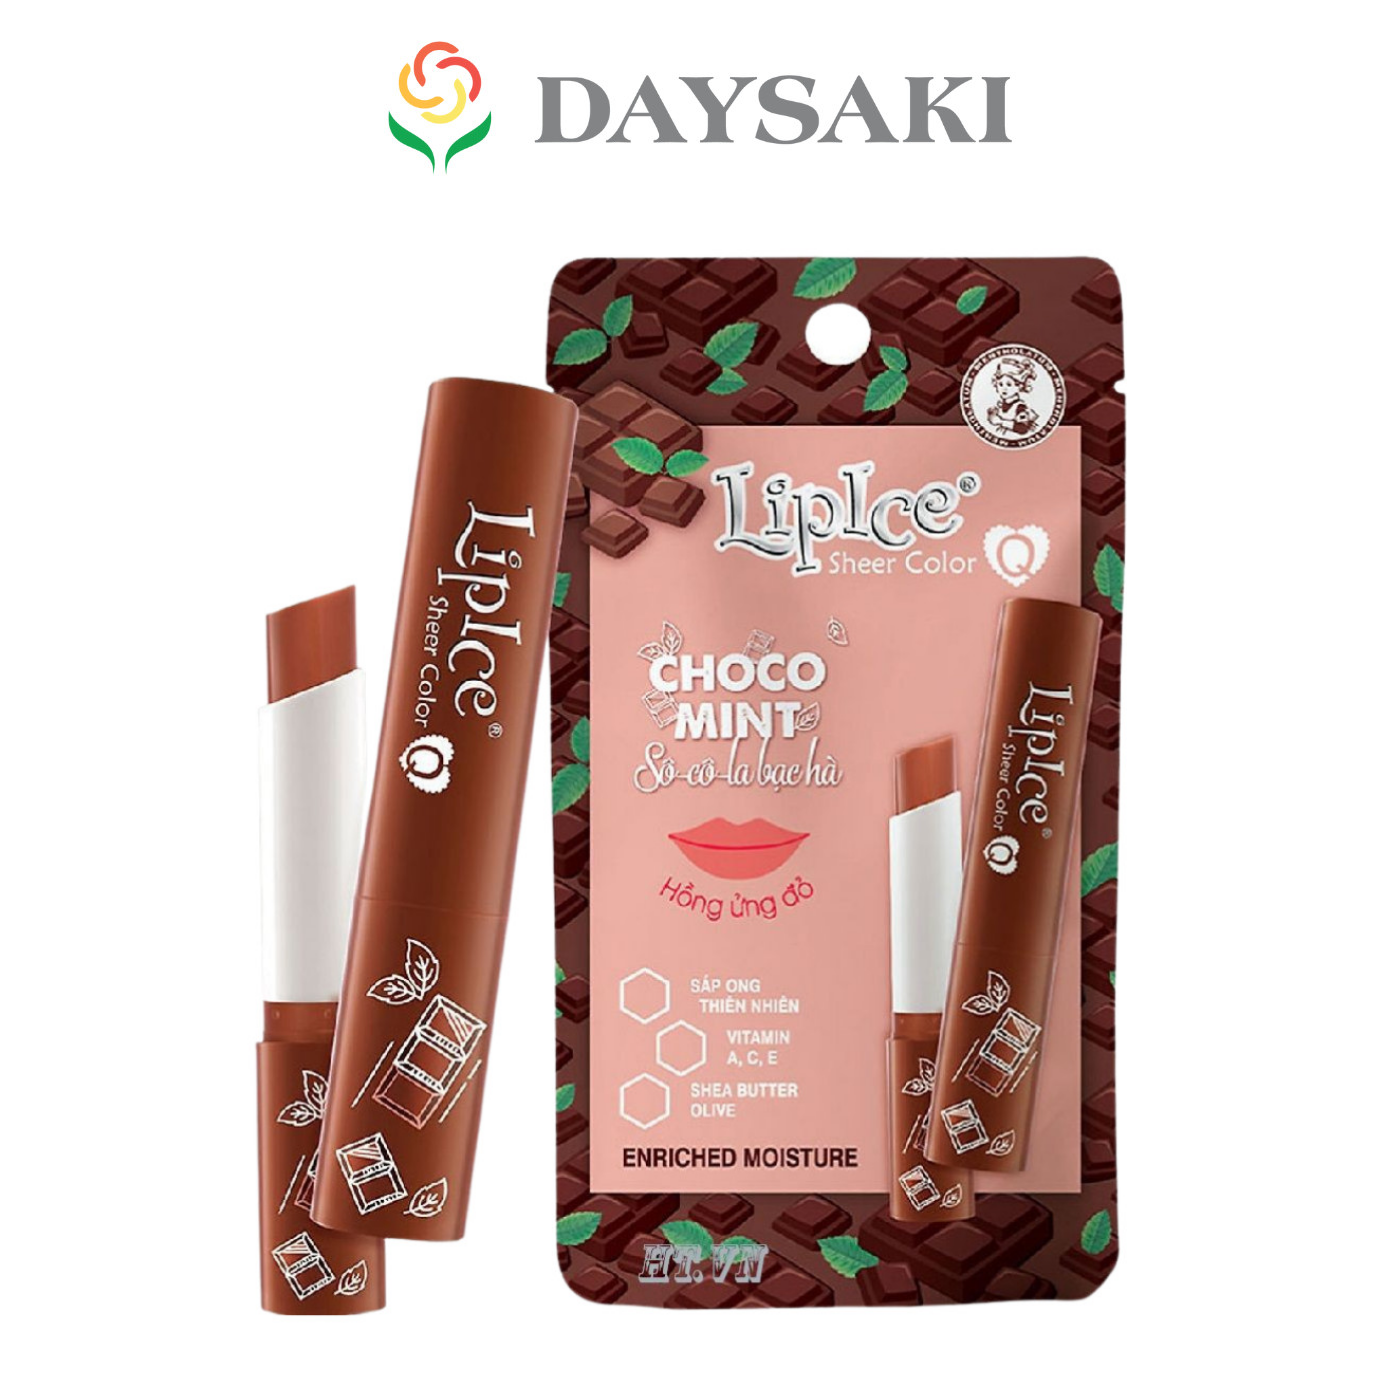 LipIce Son Dưỡng Chuyển Màu Hương Chocolate Bạc Hà Choco Mint Sheer Color Q 2.4g